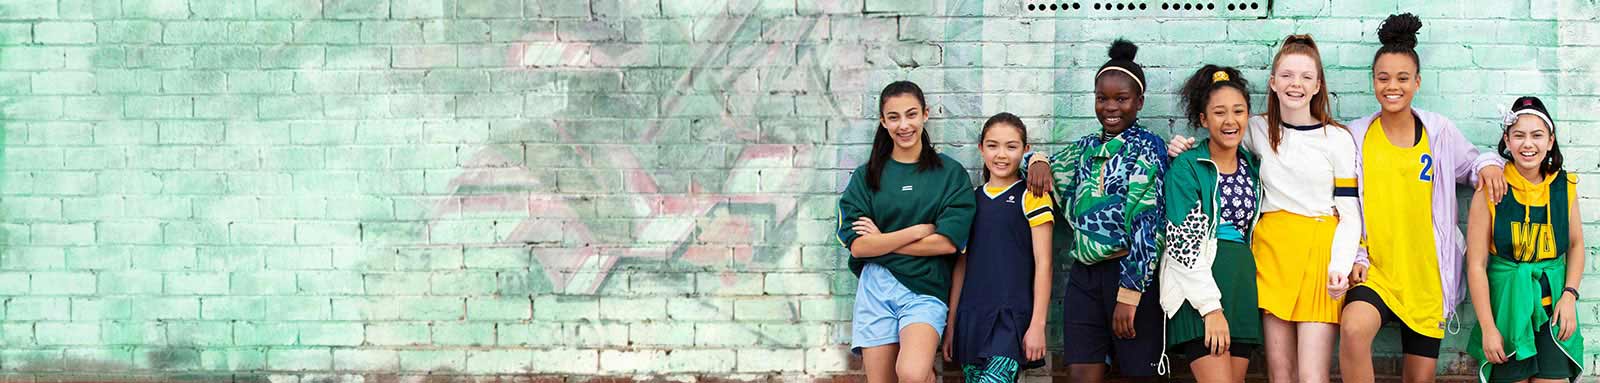 Netball girls standing infront of green brick wall